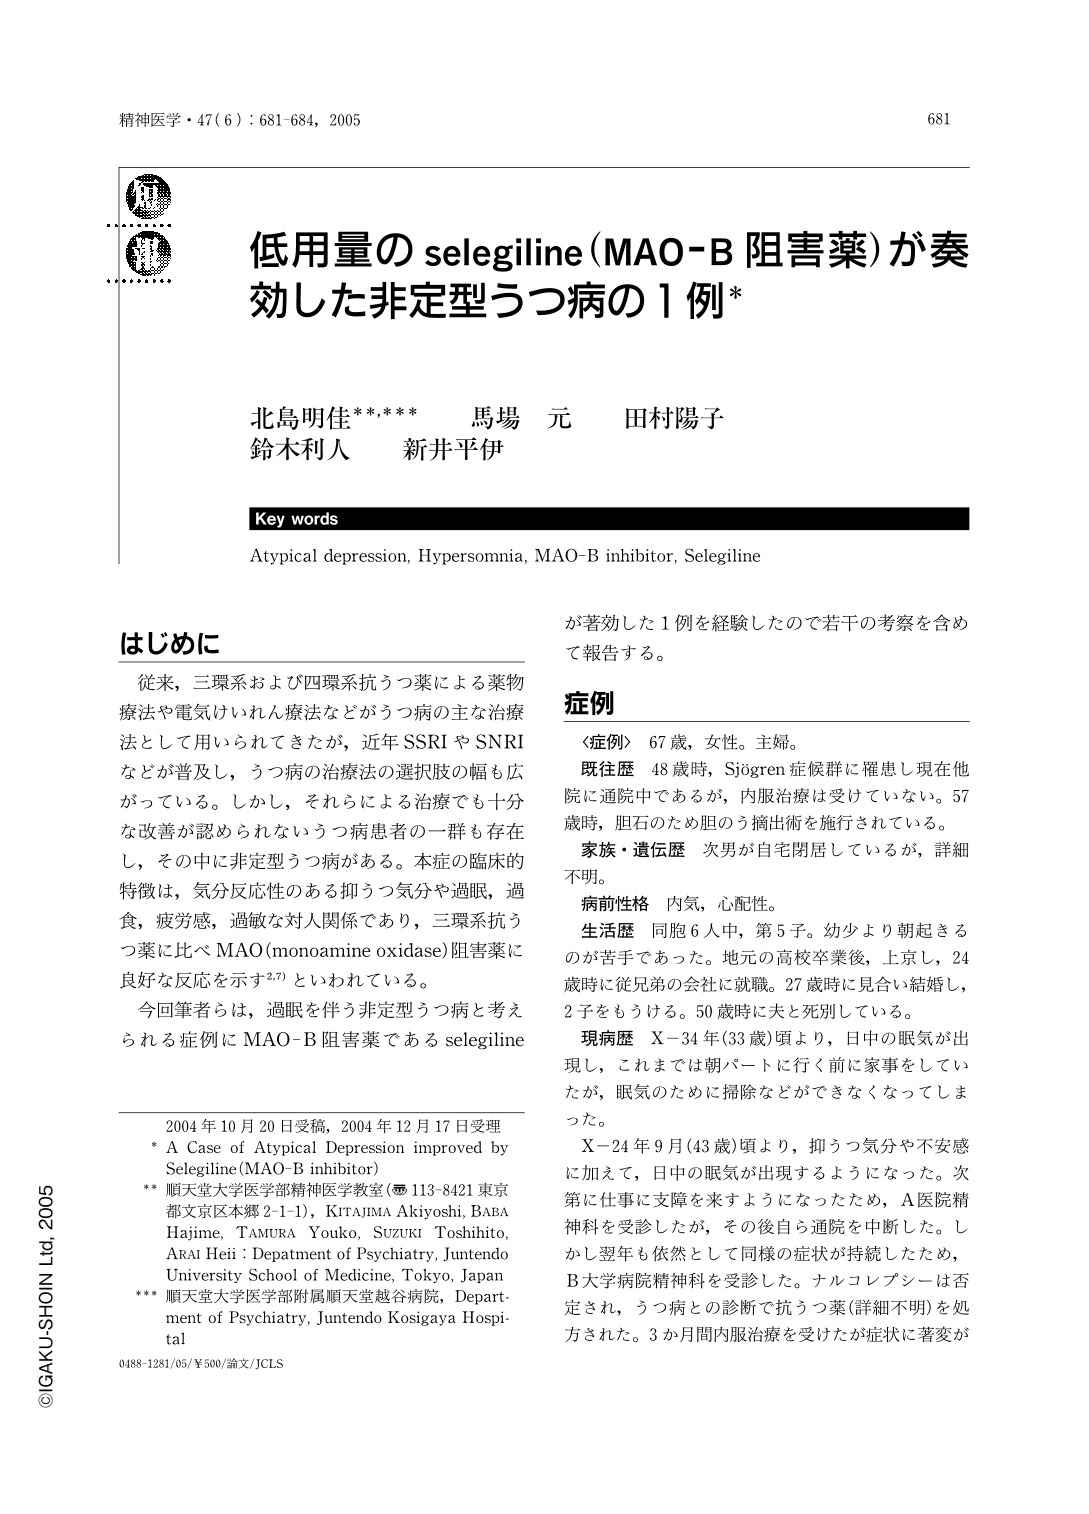 低用量のselegiline Mao B阻害薬 が奏効した非定型うつ病の1例 精神医学 47巻6号 医書 Jp